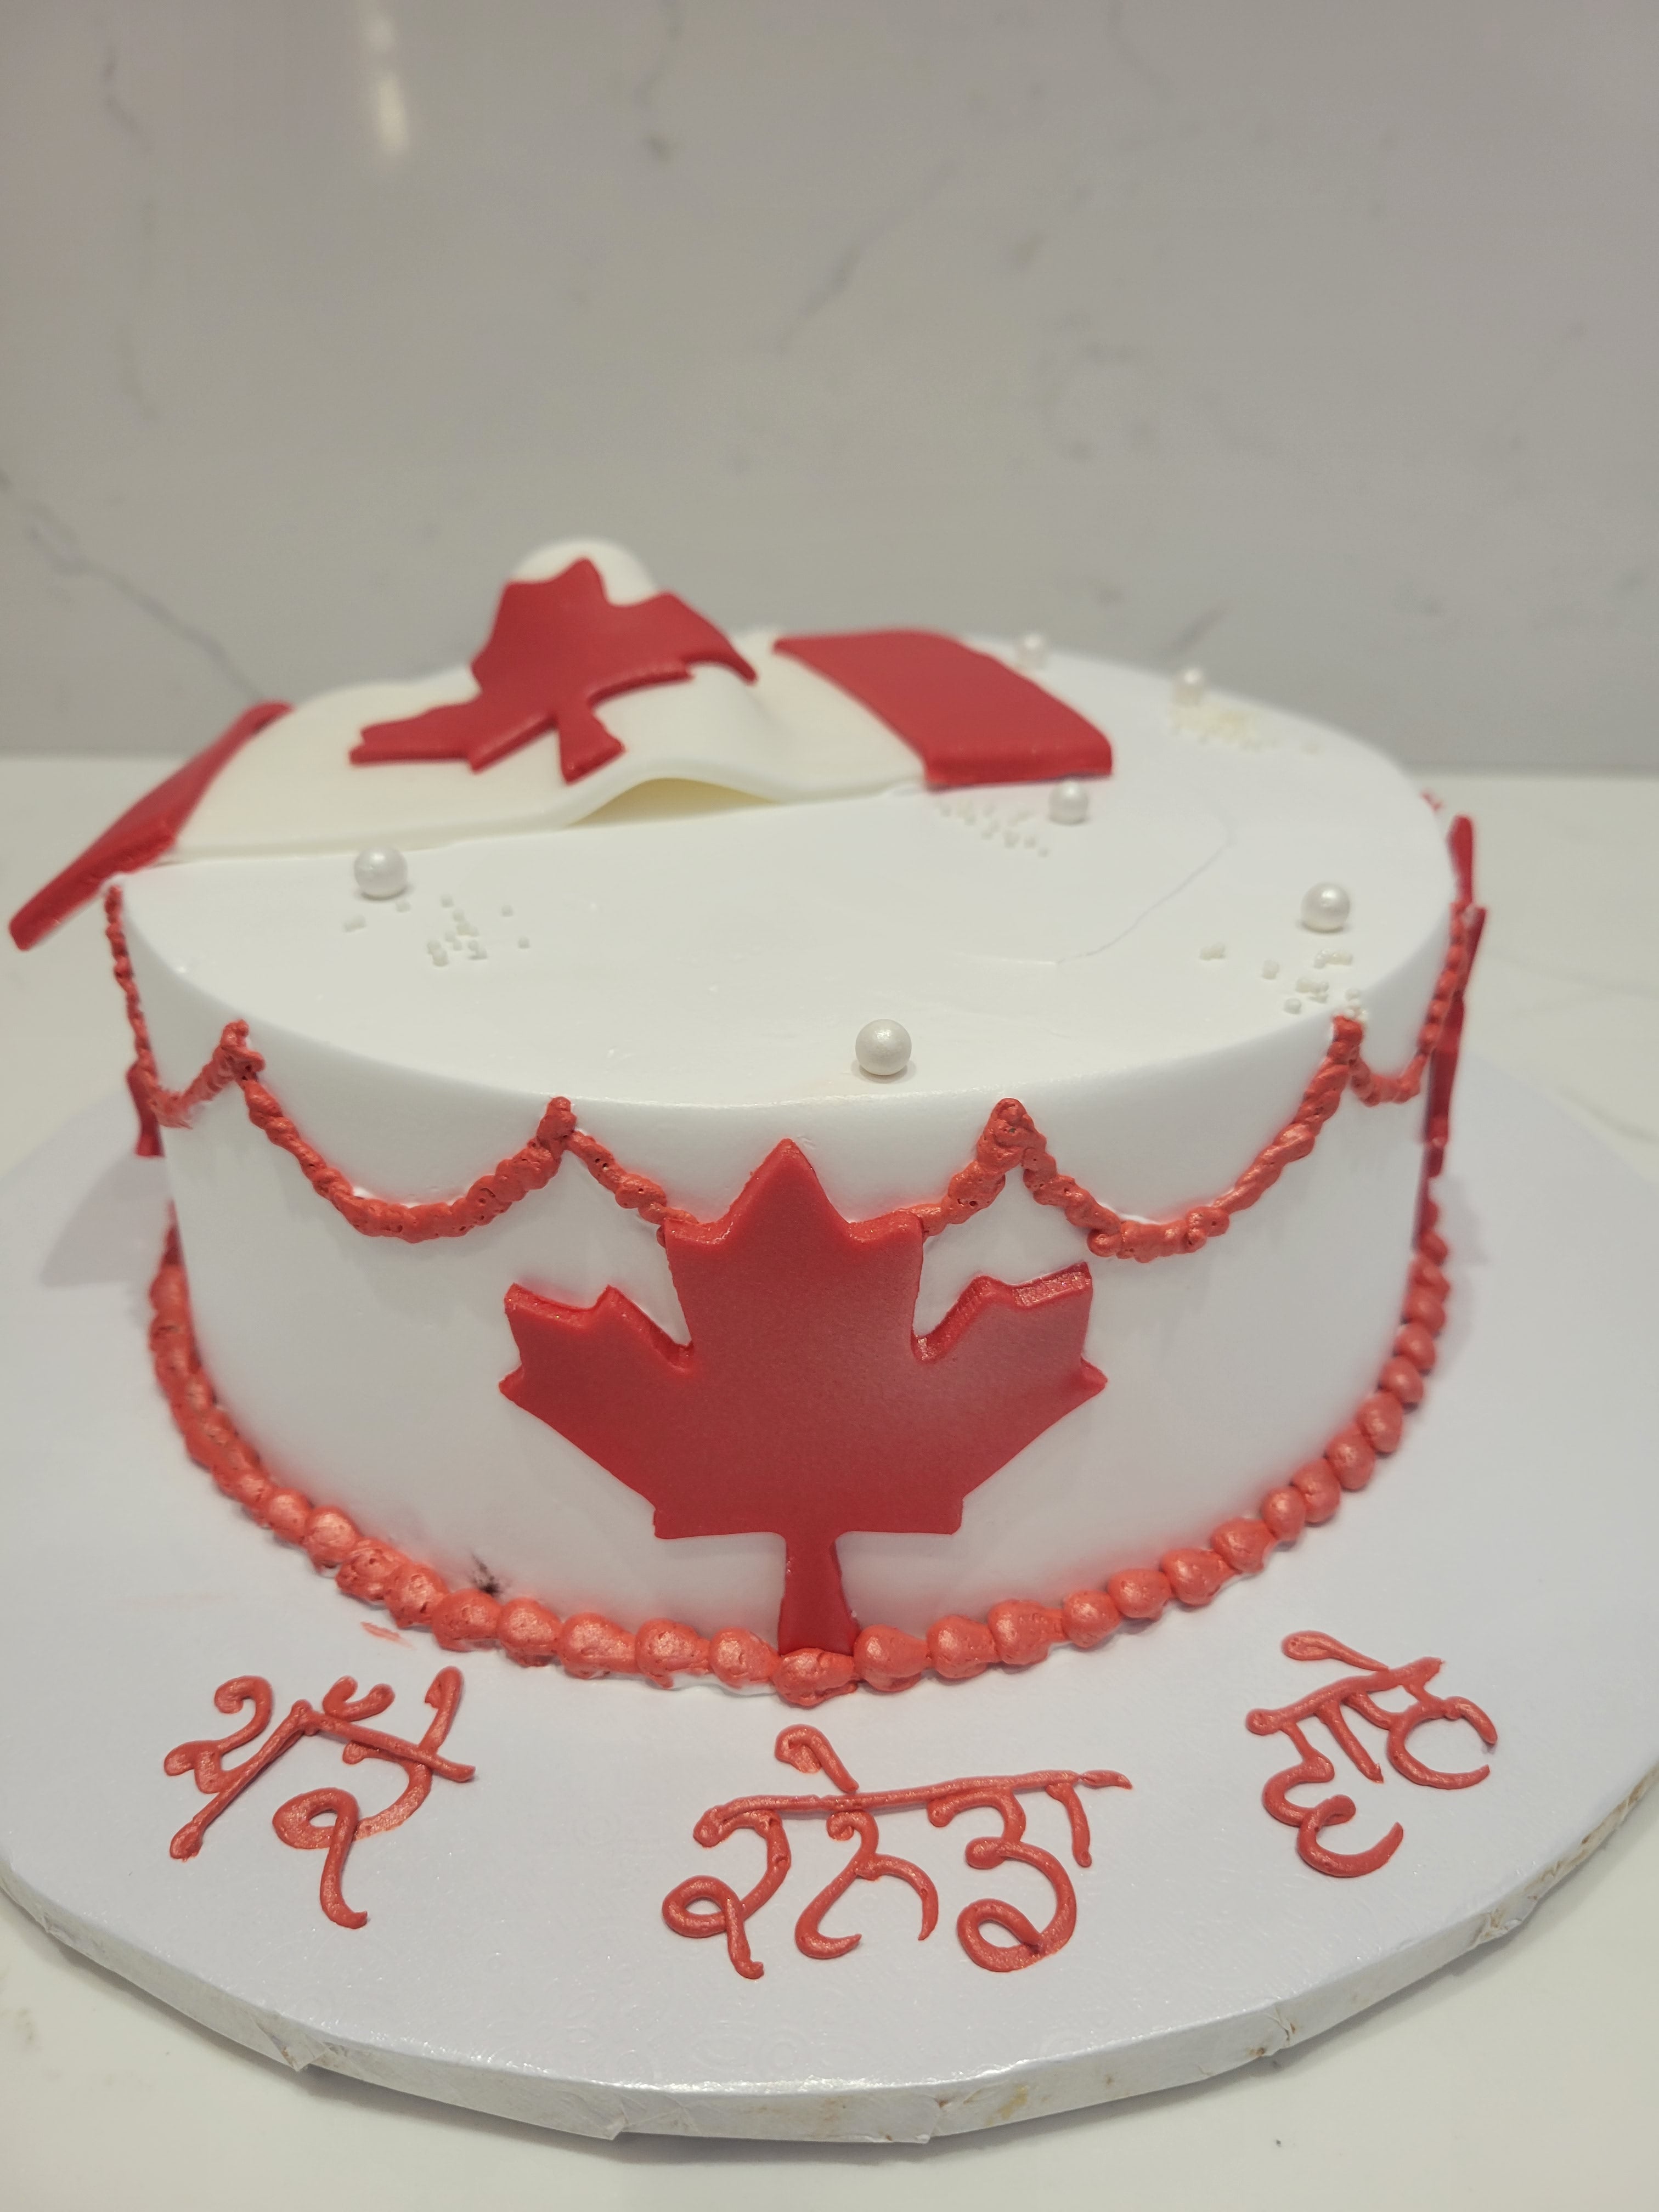 Chocolate cake on the Canadian flag background,... - Stock Illustration  [103107798] - PIXTA